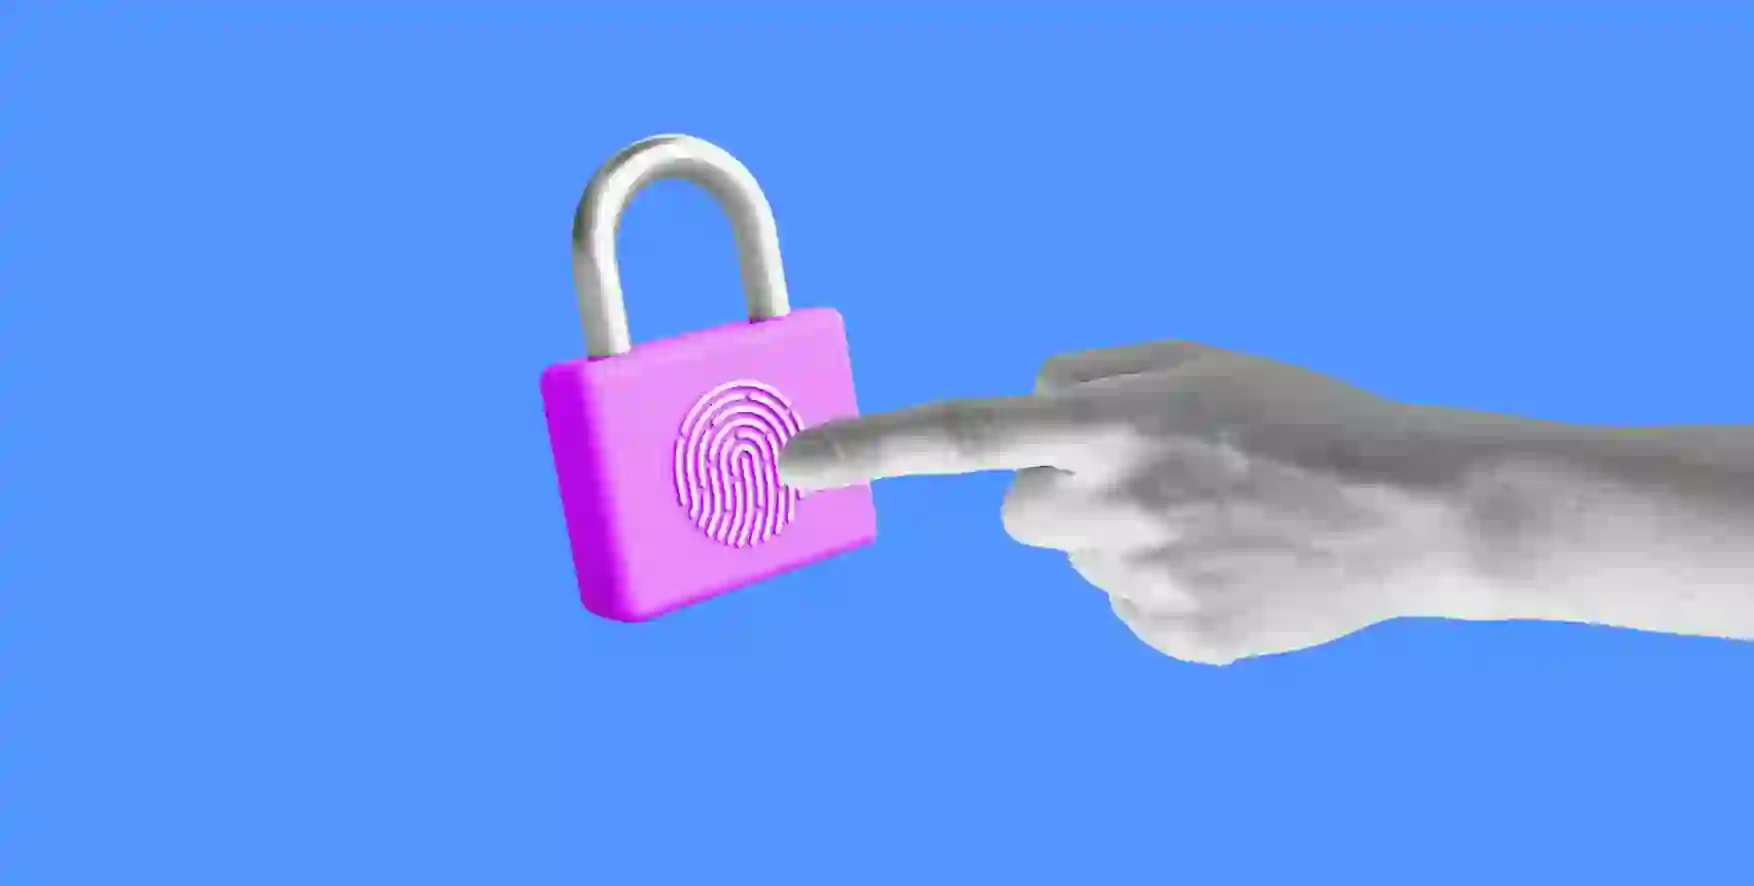 a finger presses a lock with a fingerprint symbol